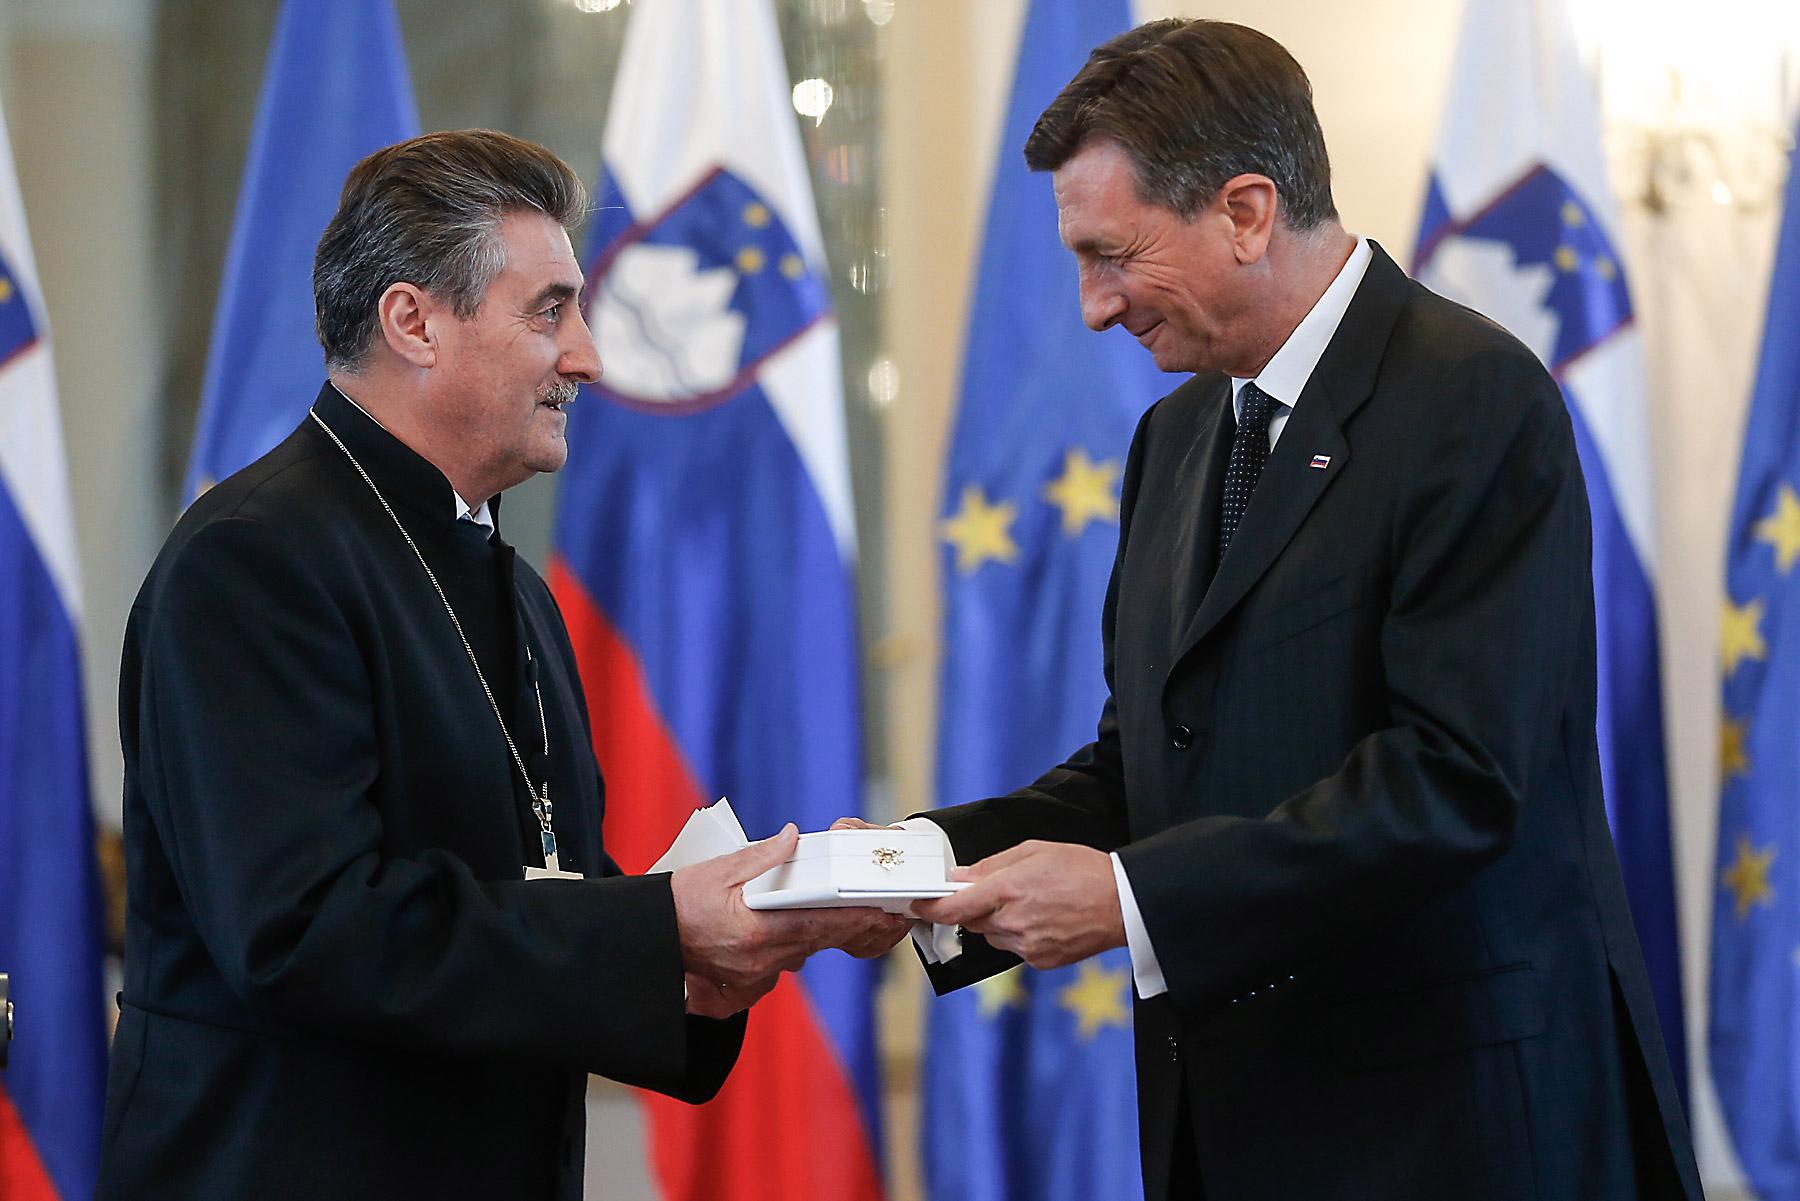 Borut Pahor, der Präsident der Republik Slowenien, verleiht Bischof Geza Erniša den Silbernen Orden für Verdienste. Foto: Stanko Gruden/STA